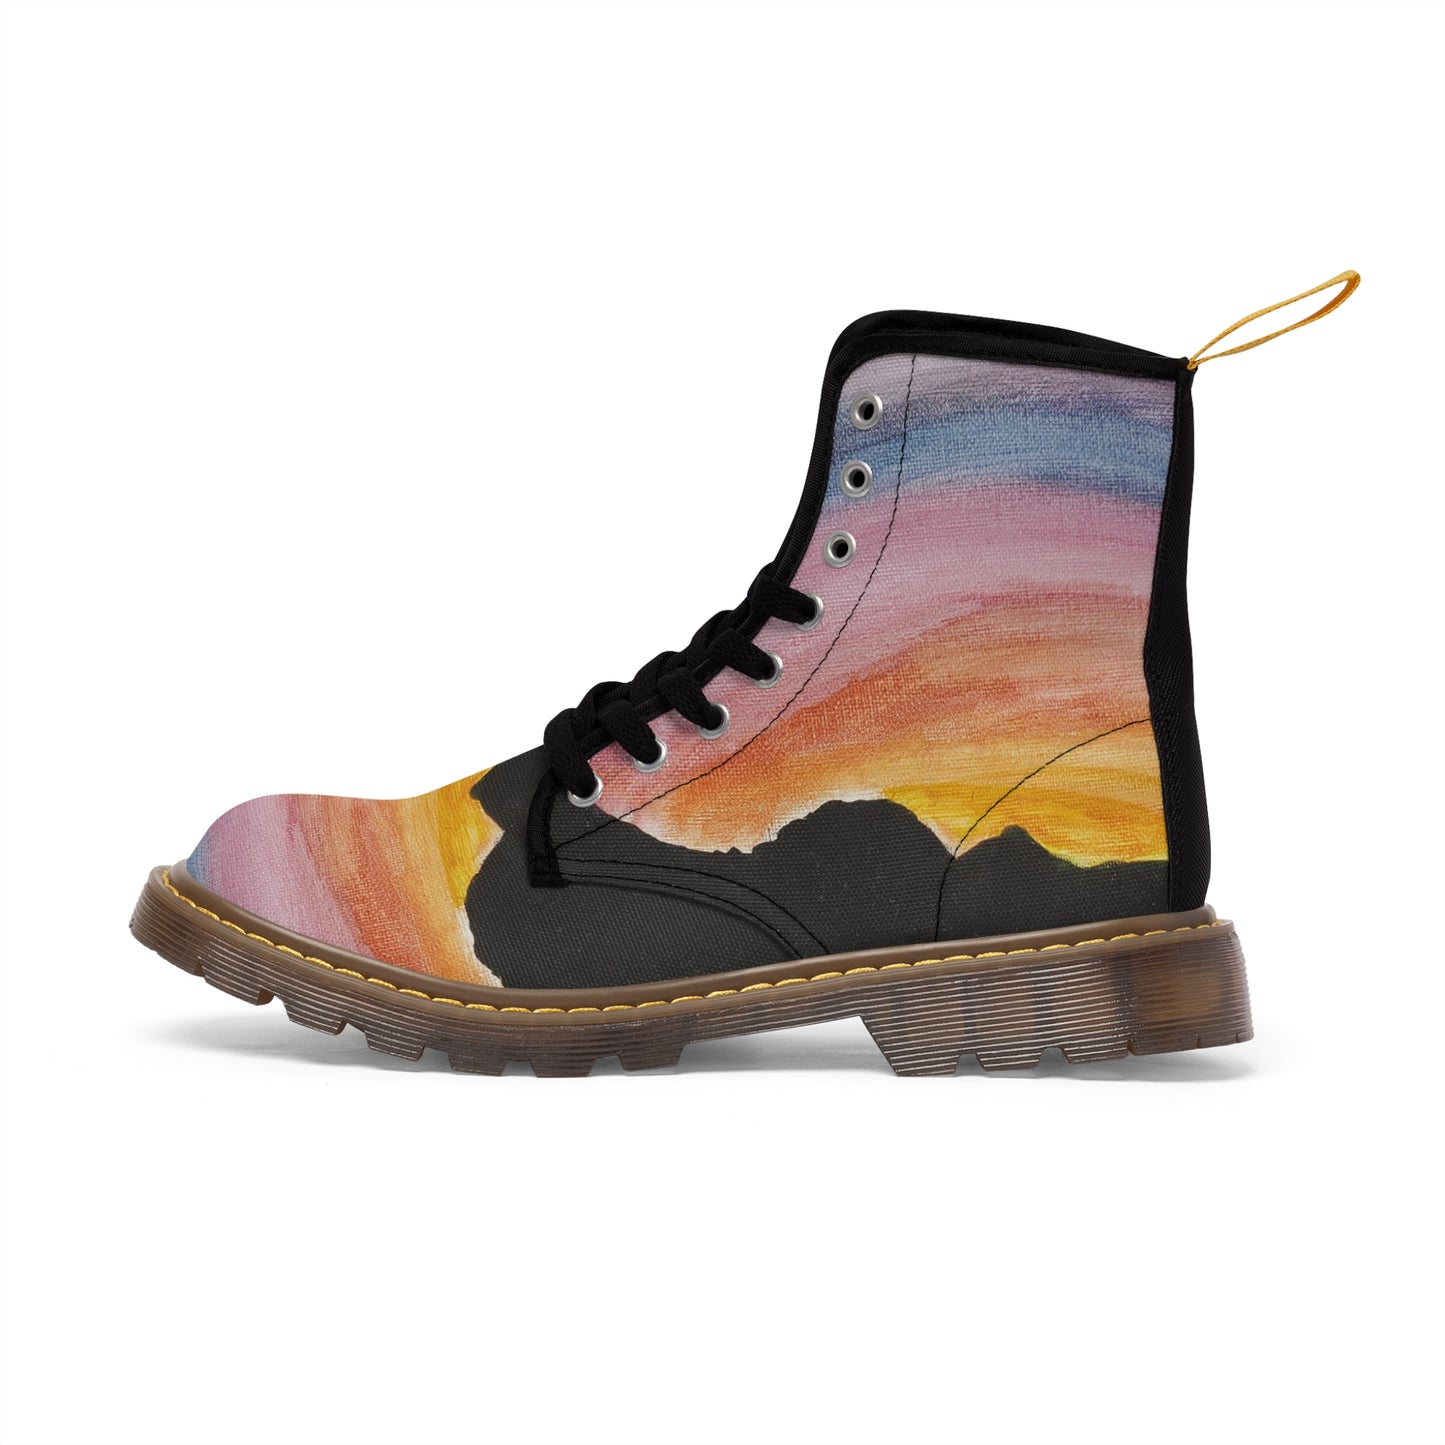 Men's Canvas Boots  "Desert Sunset"